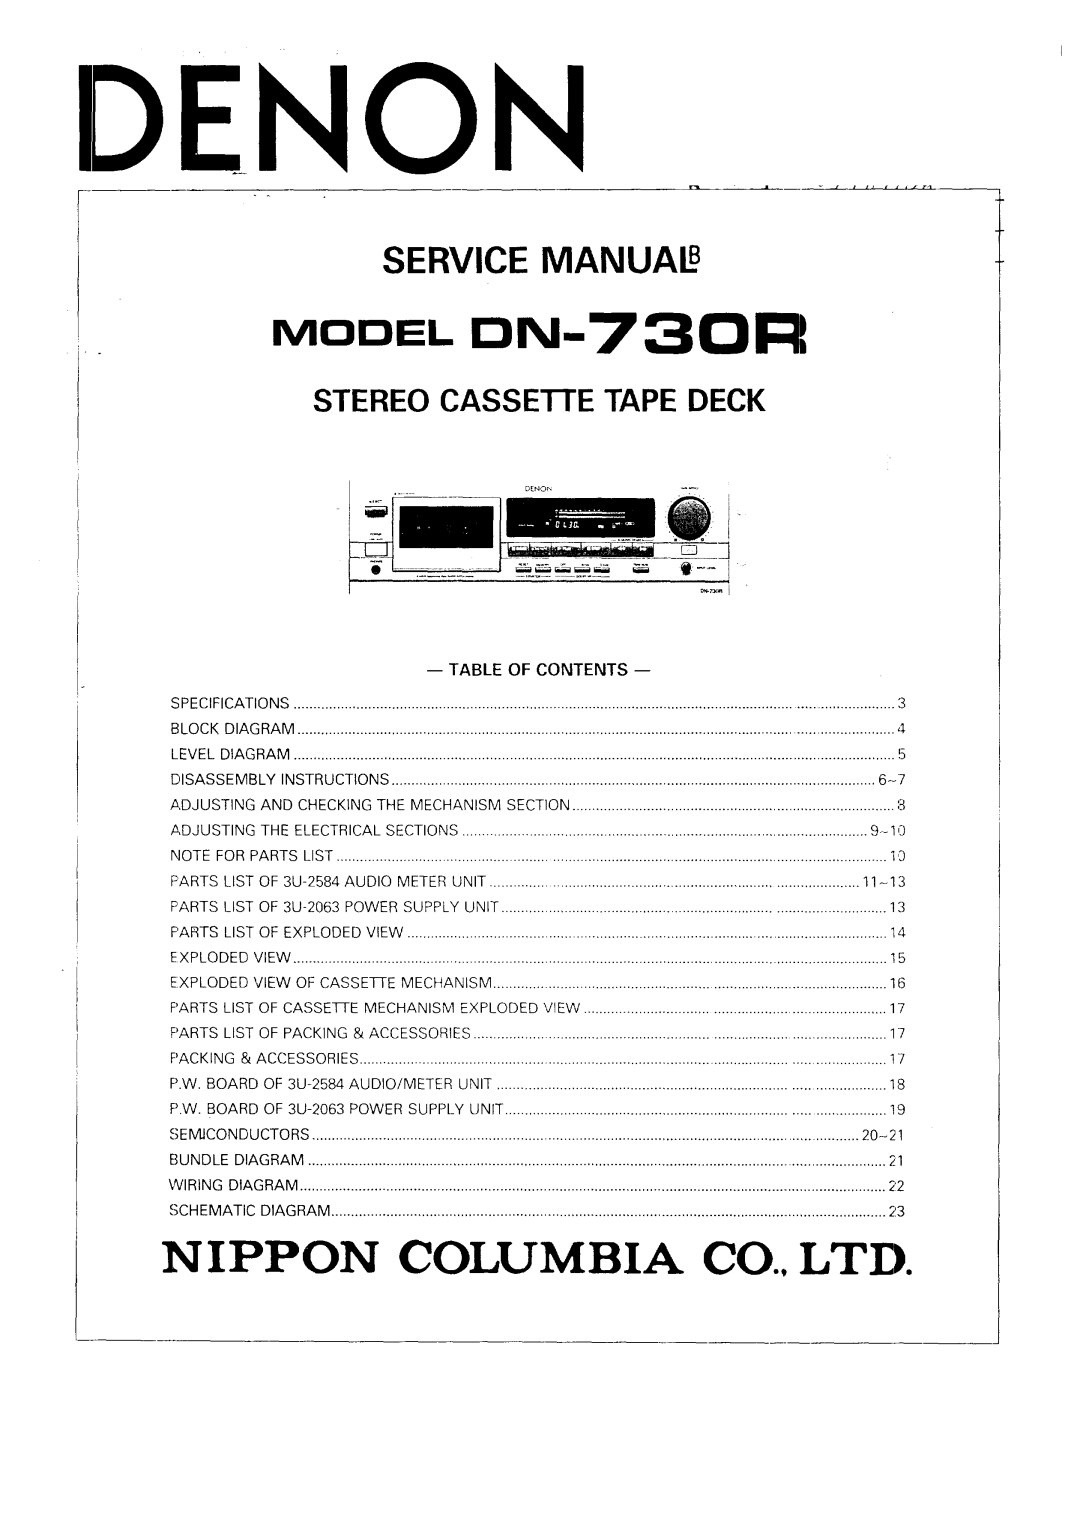 Denon specifications Service Manua, Idenon, MODEL DN-730R, Stereo Cassei-Ietapedeck, Parts 